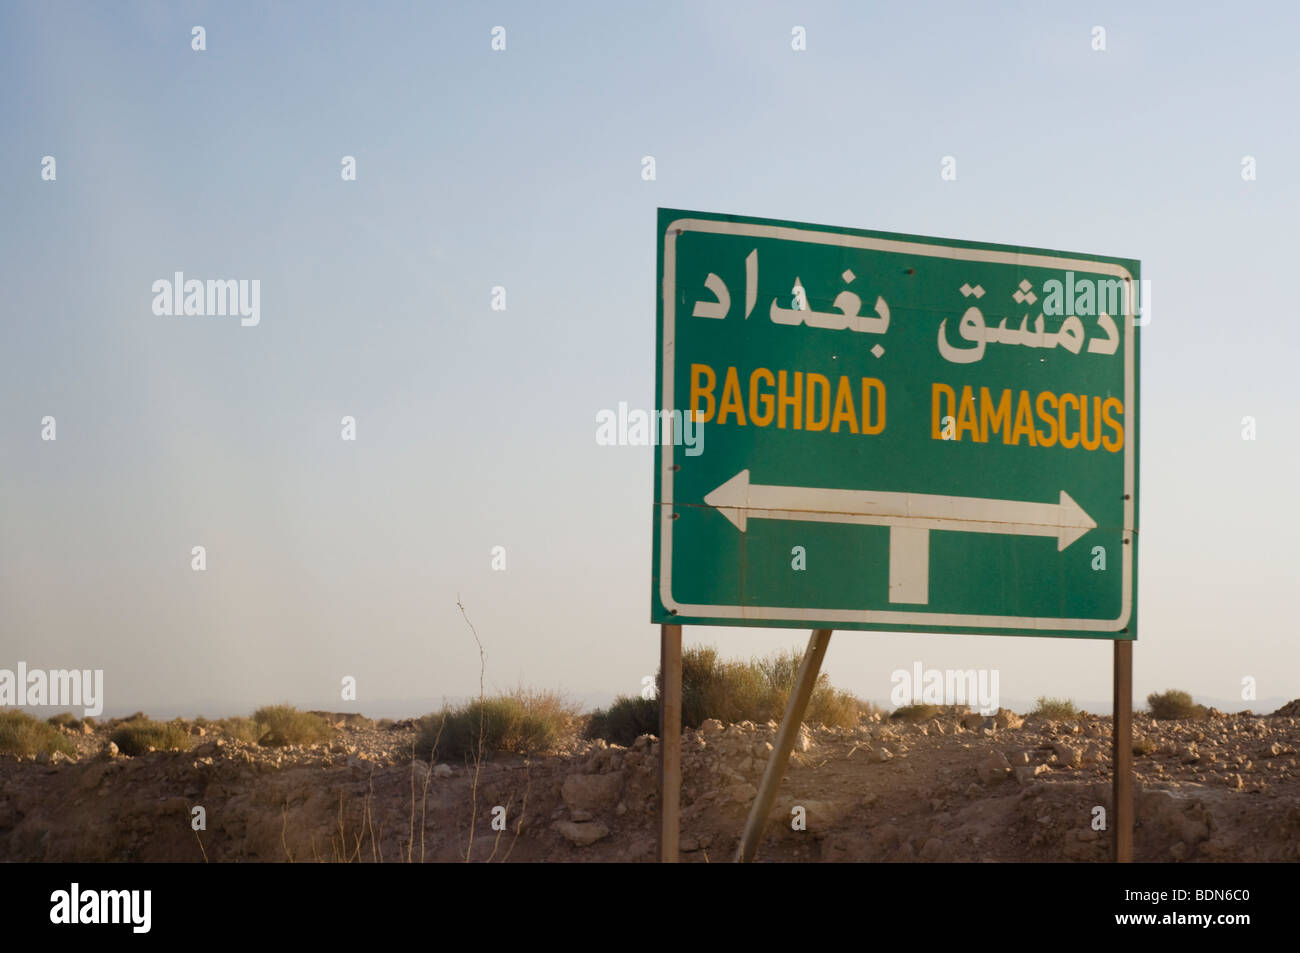 La signalisation routière le long d'une autoroute syrien montrent la voie à Bagdad, l'Iraq et la capitale syrienne de Damas. Banque D'Images